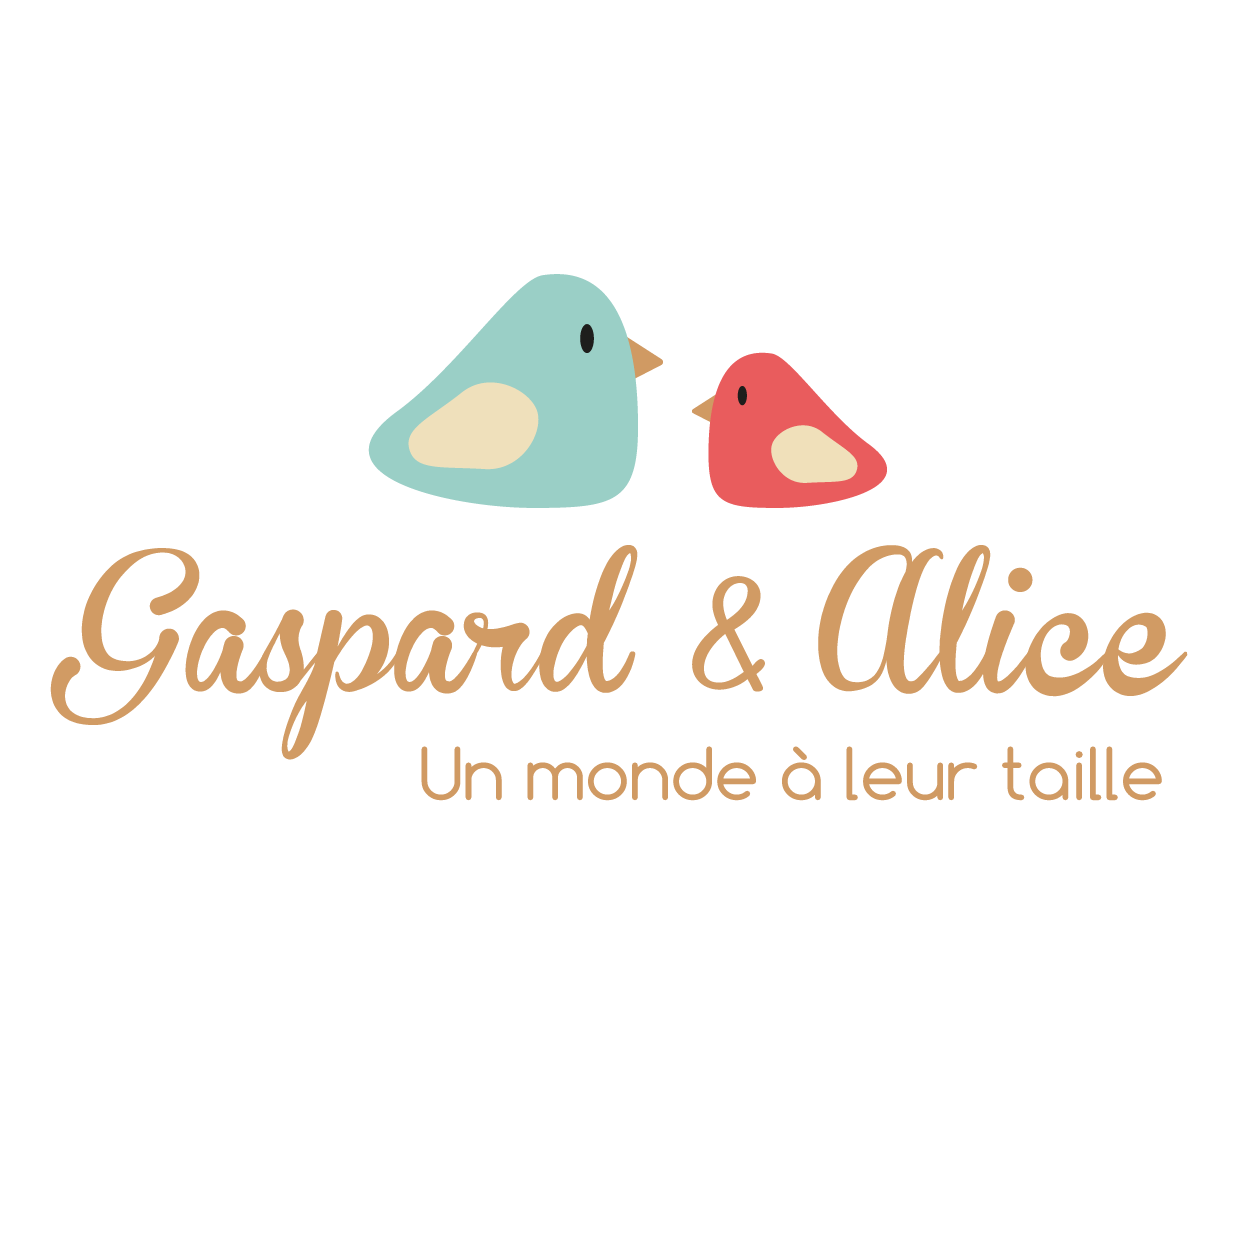 Gaspard&Alice